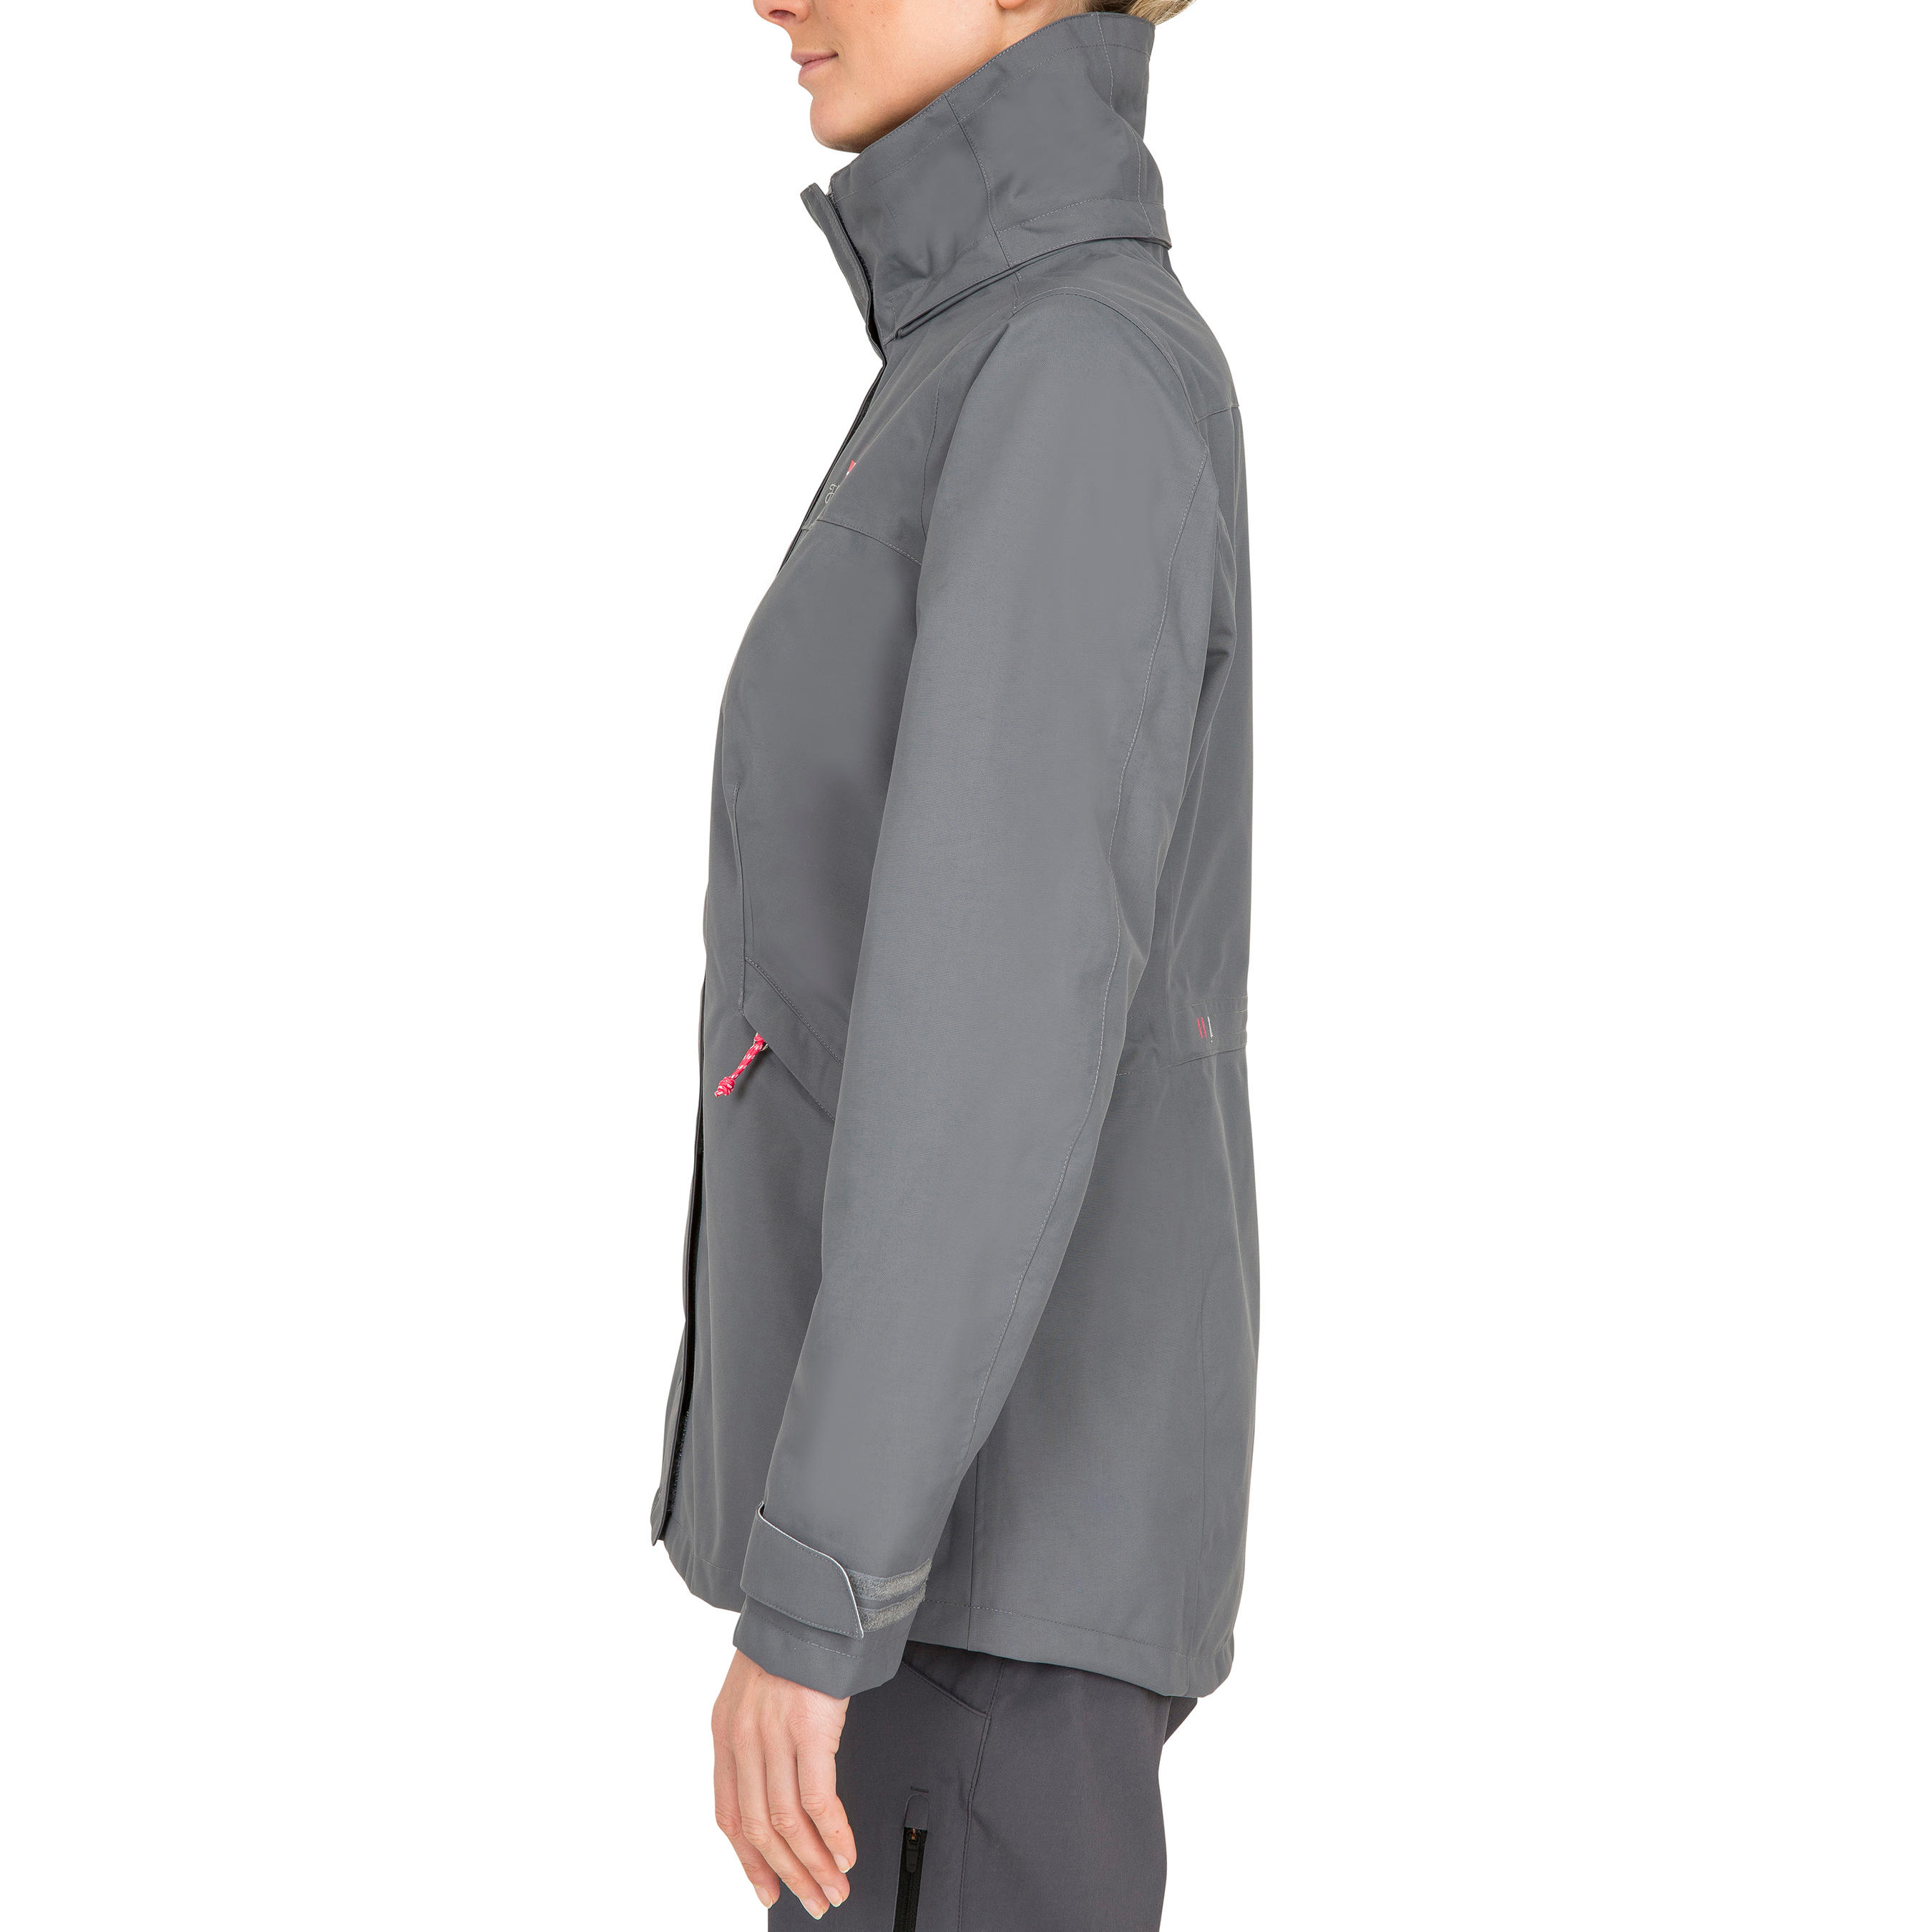 Coastal 100 women's waterproof, windproof, breathable jacket - grey 12/22